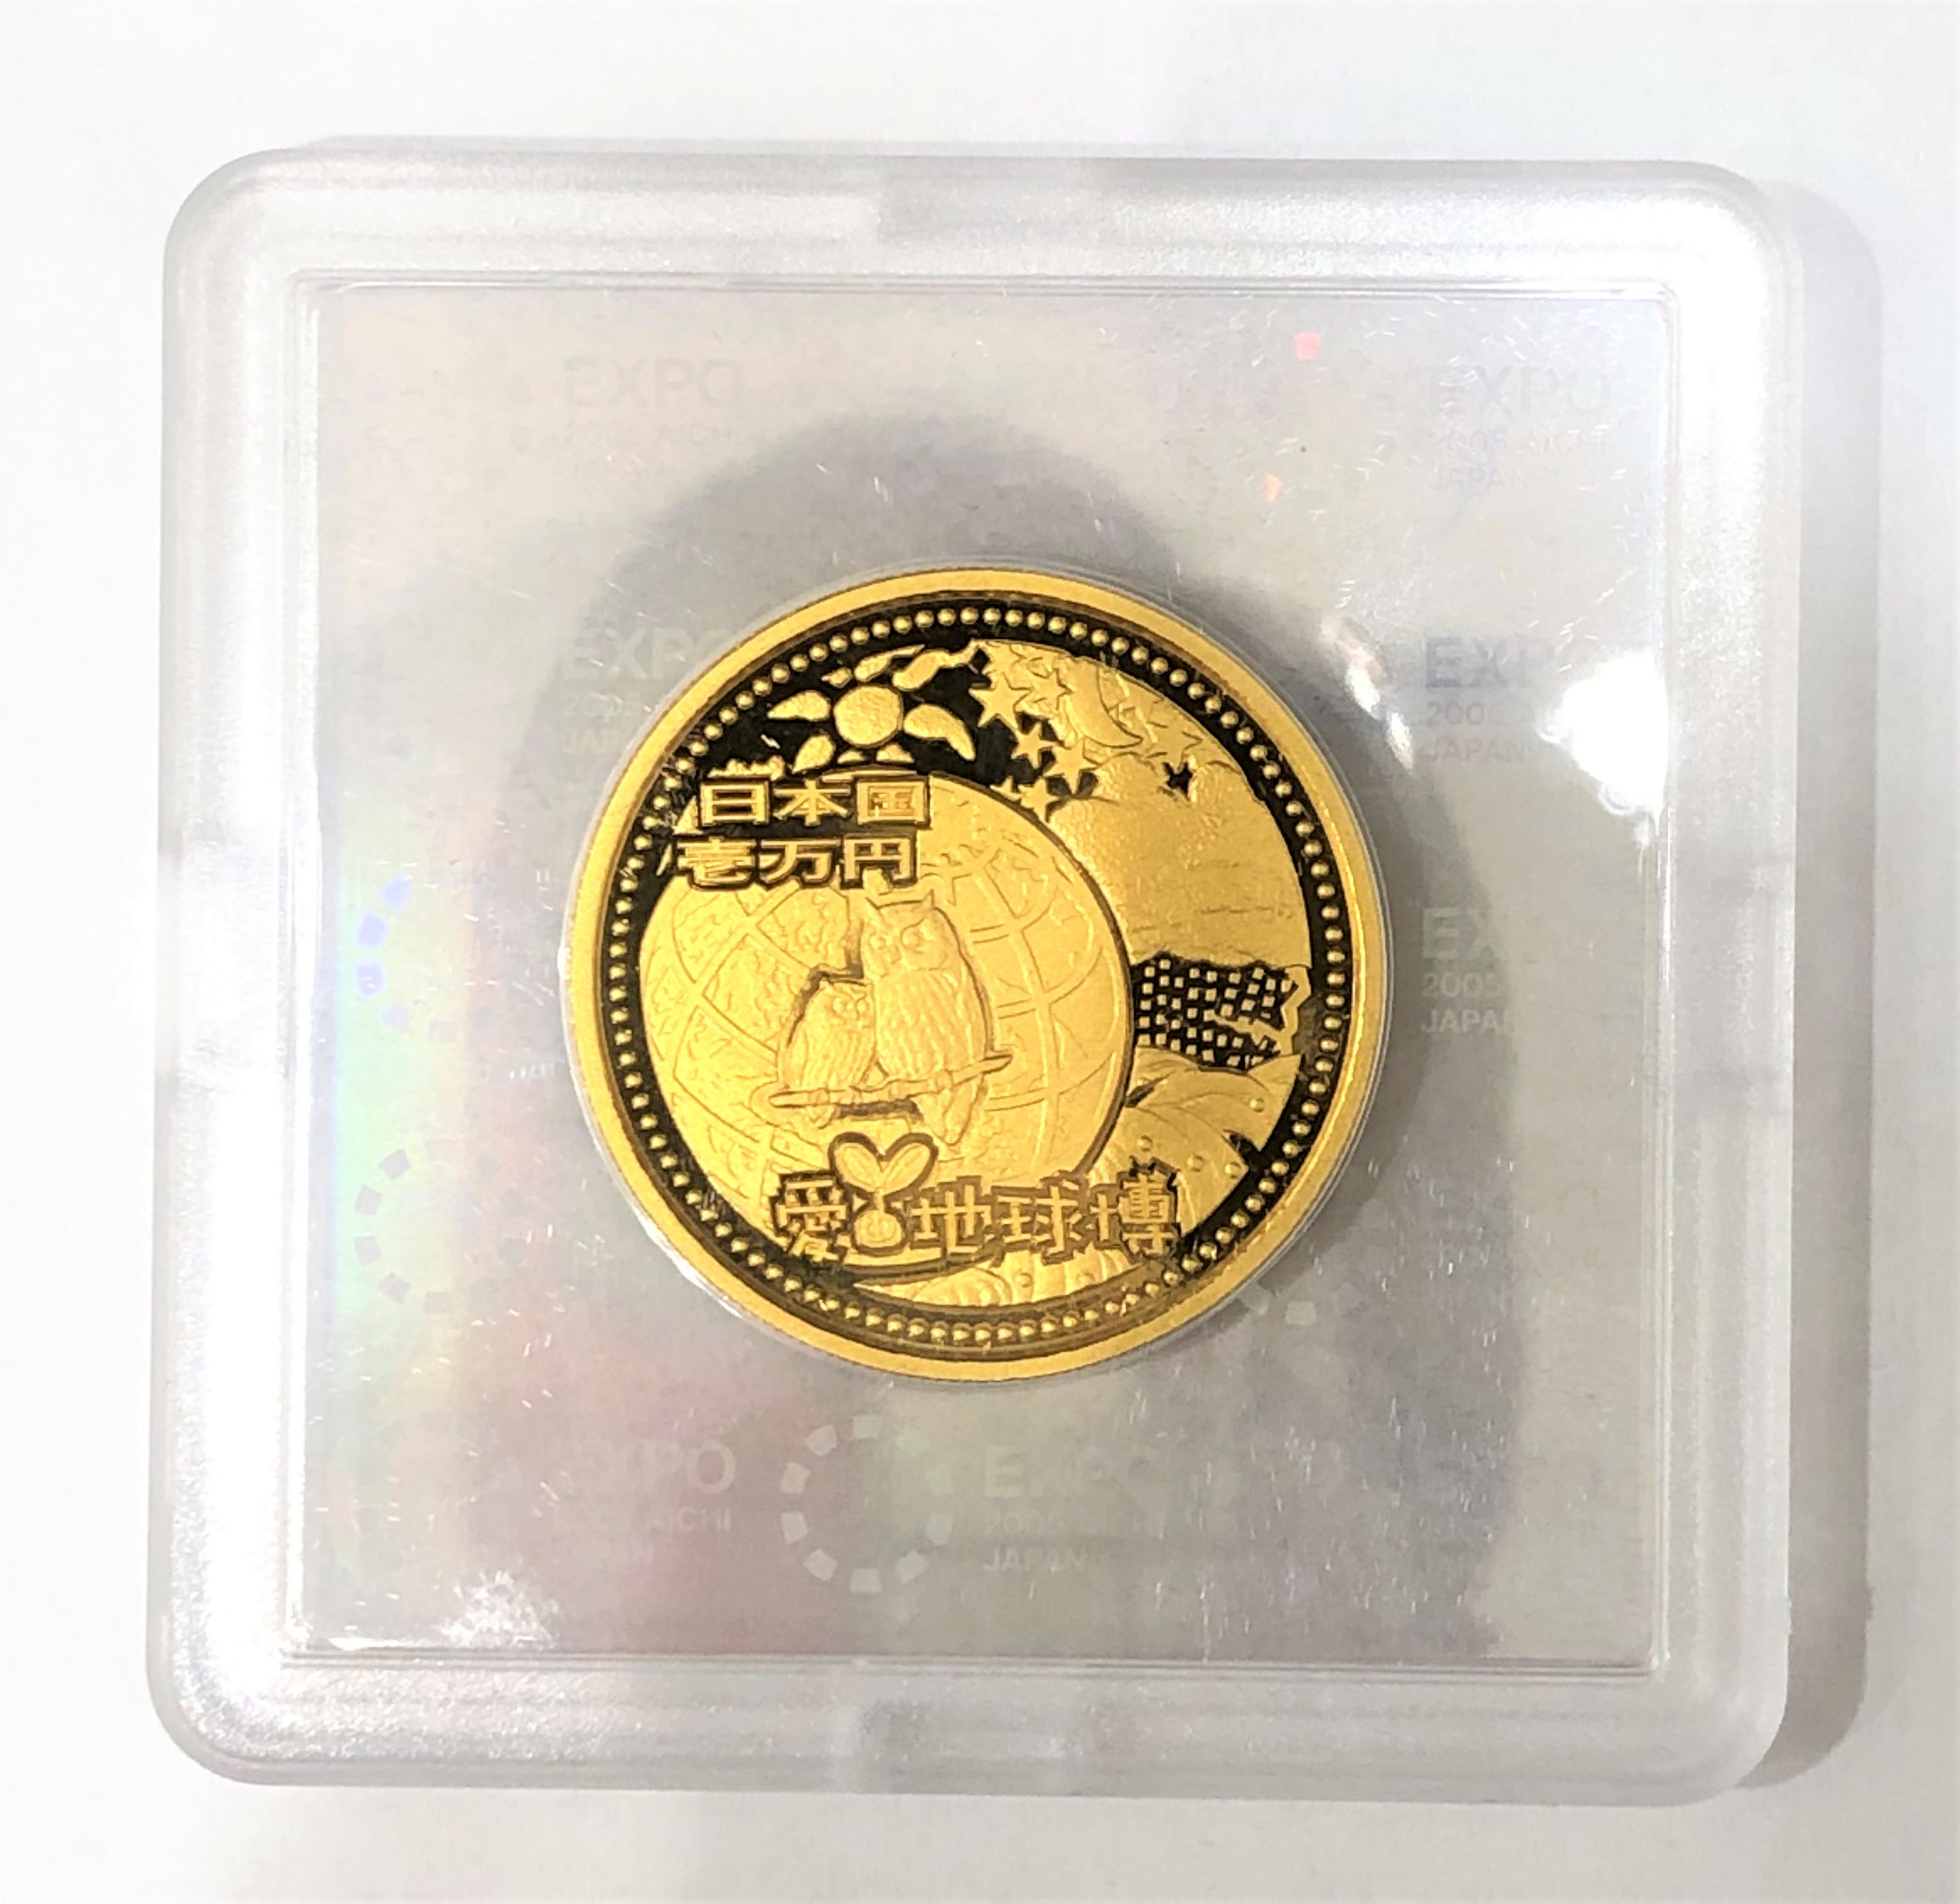 2005年 日本国際博覧会記念 1万円金貨